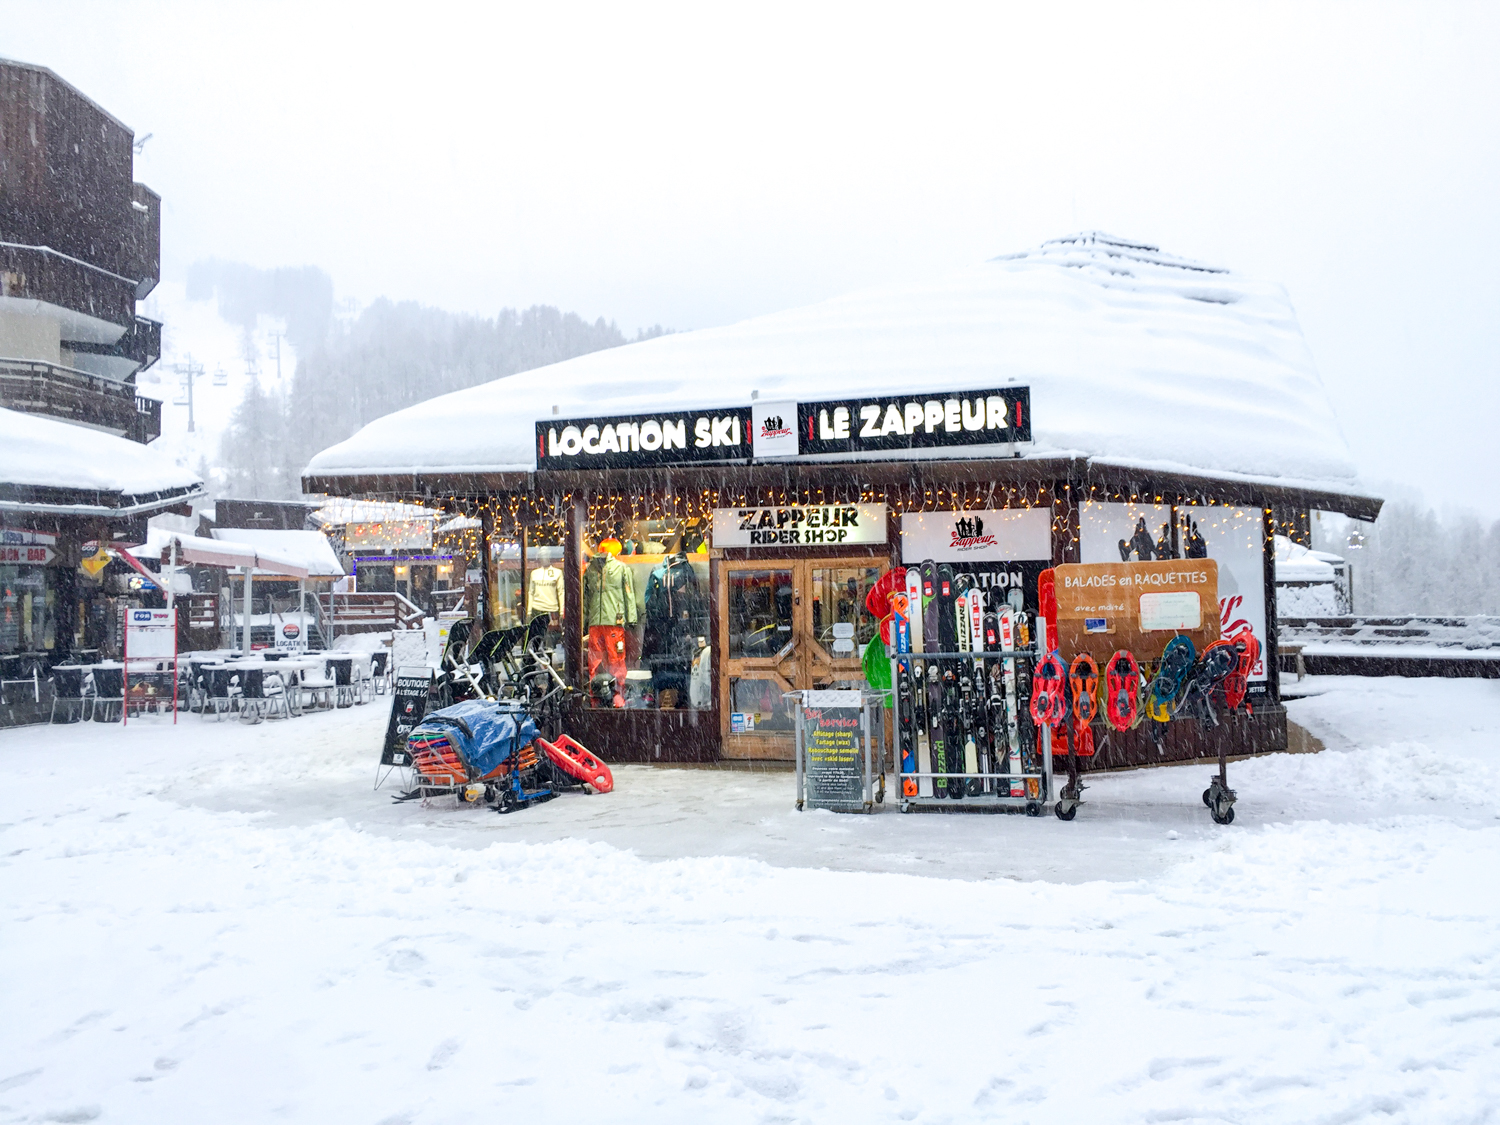 Le Zappeur Rider Shop exterieur1.jpg